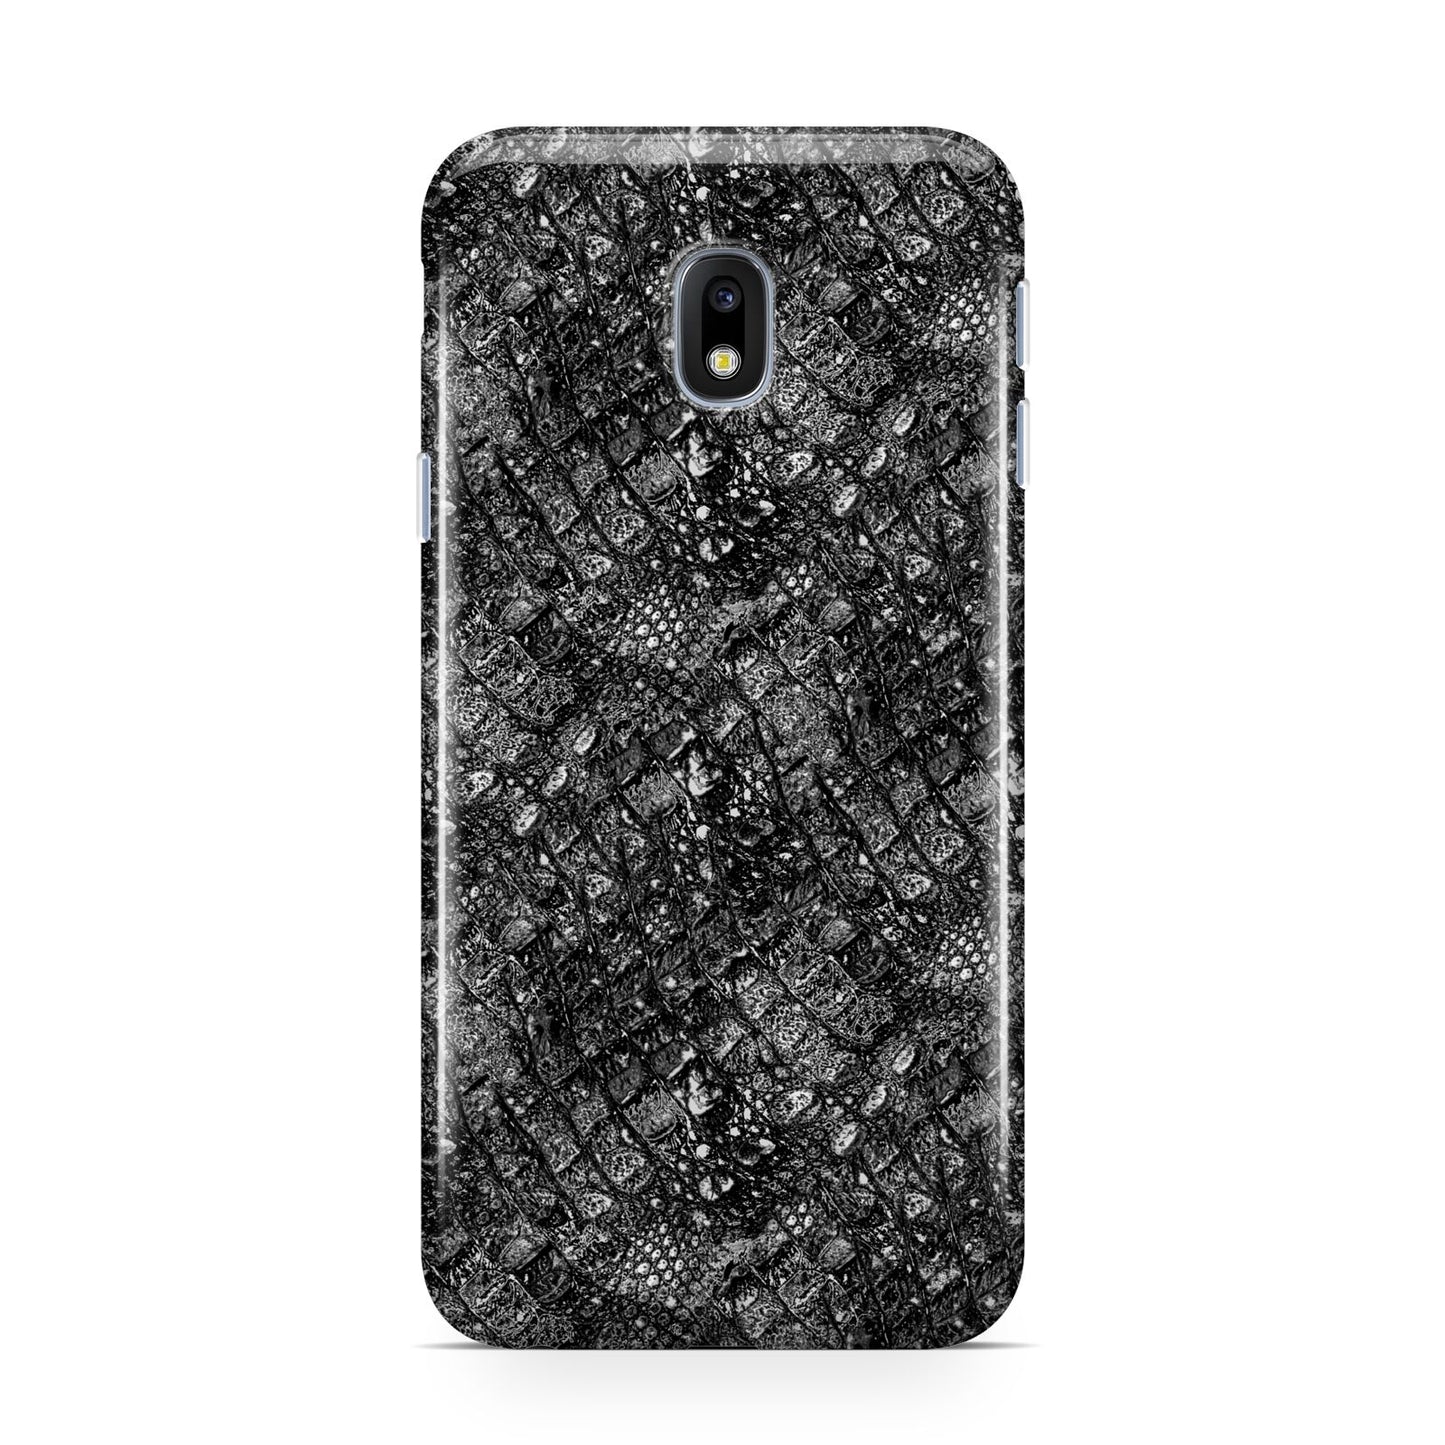 Snakeskin Design Samsung Galaxy J3 2017 Case